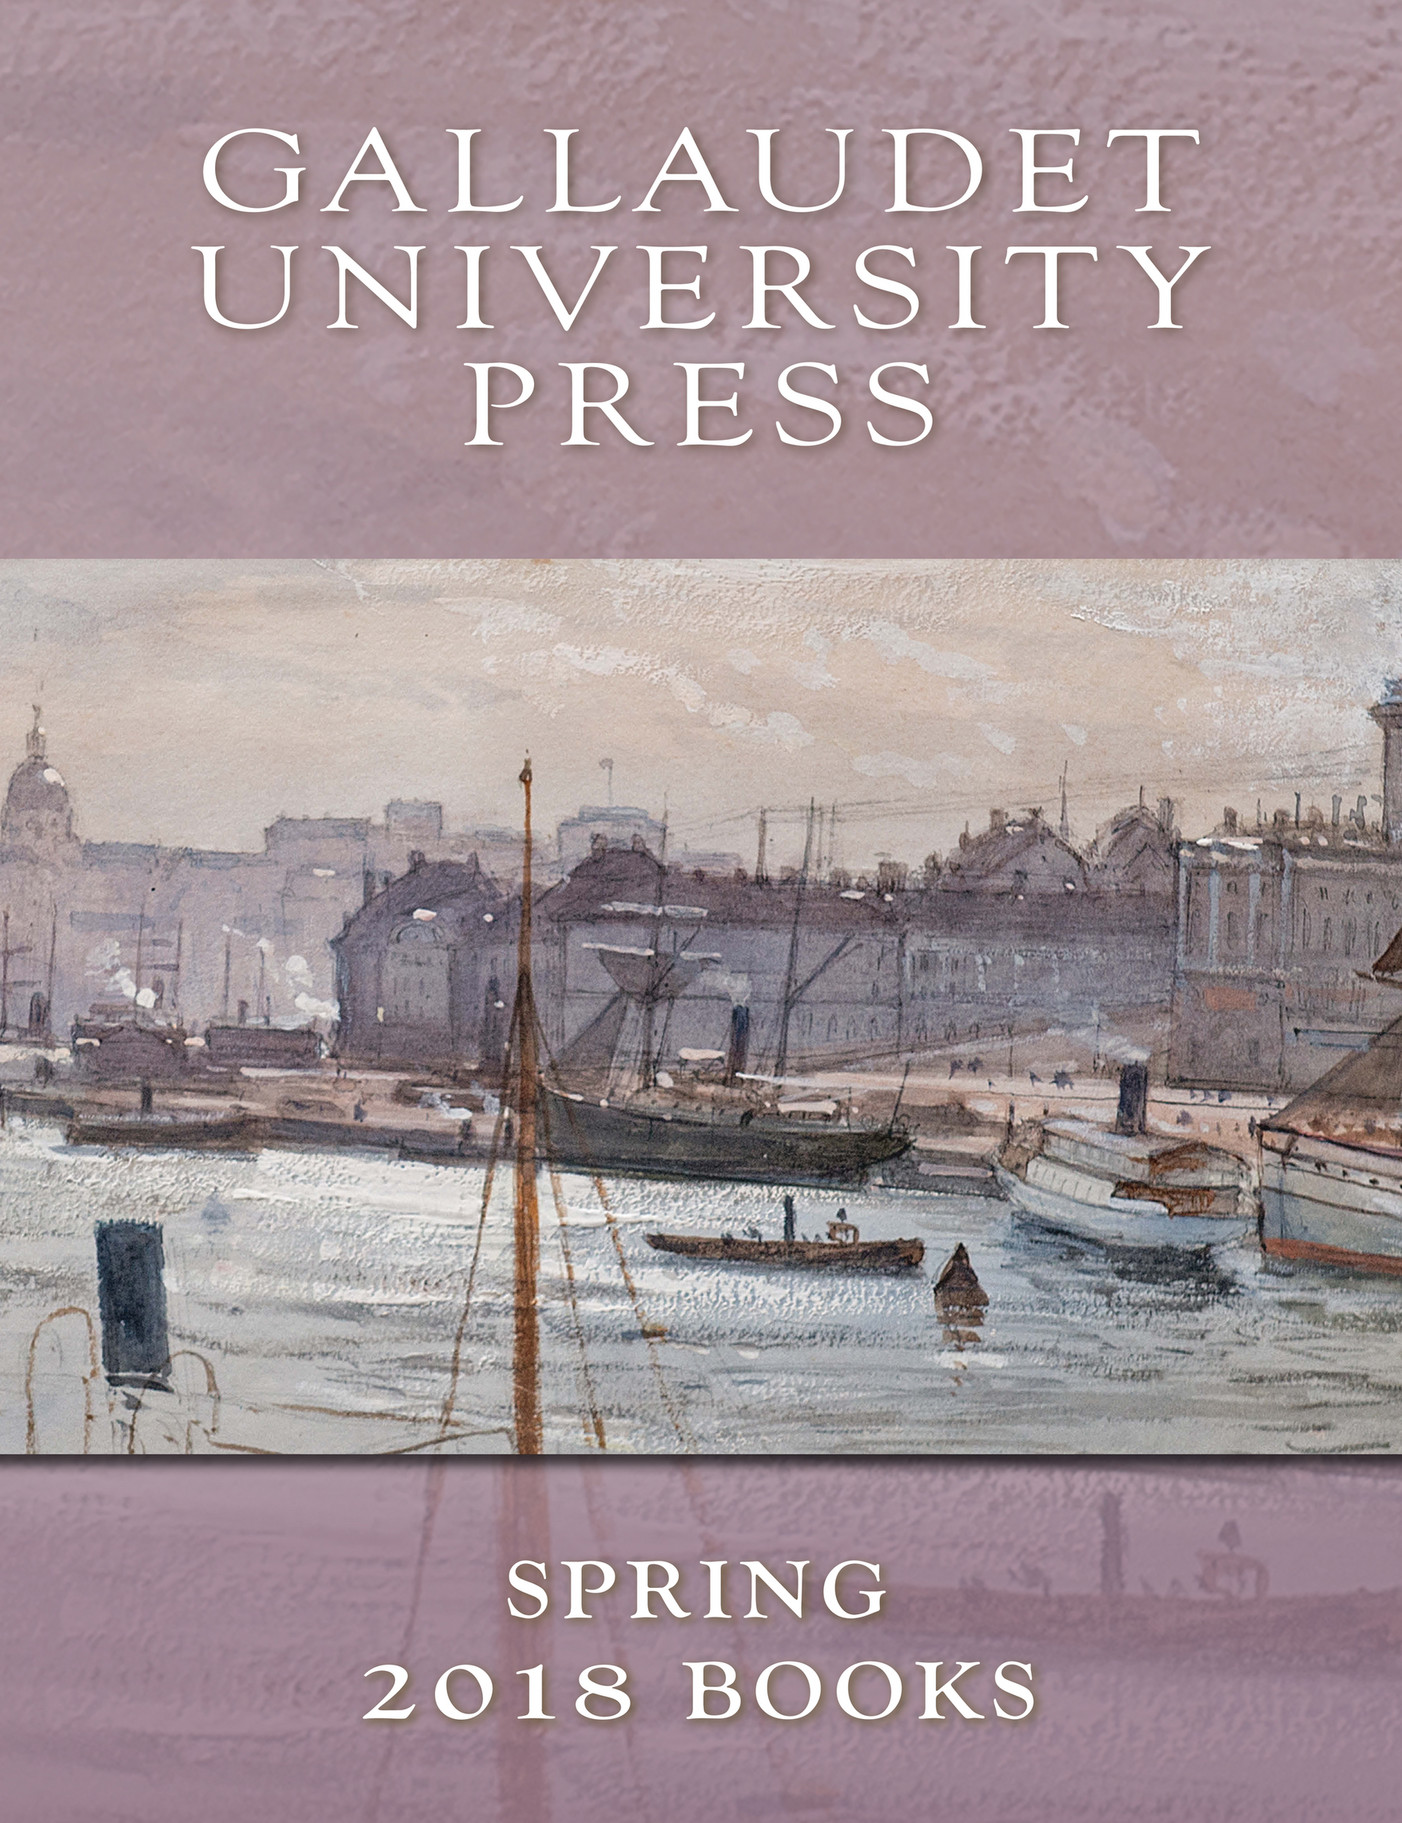 Gallaudet University Press Spring 2018 Gallaudet University Press